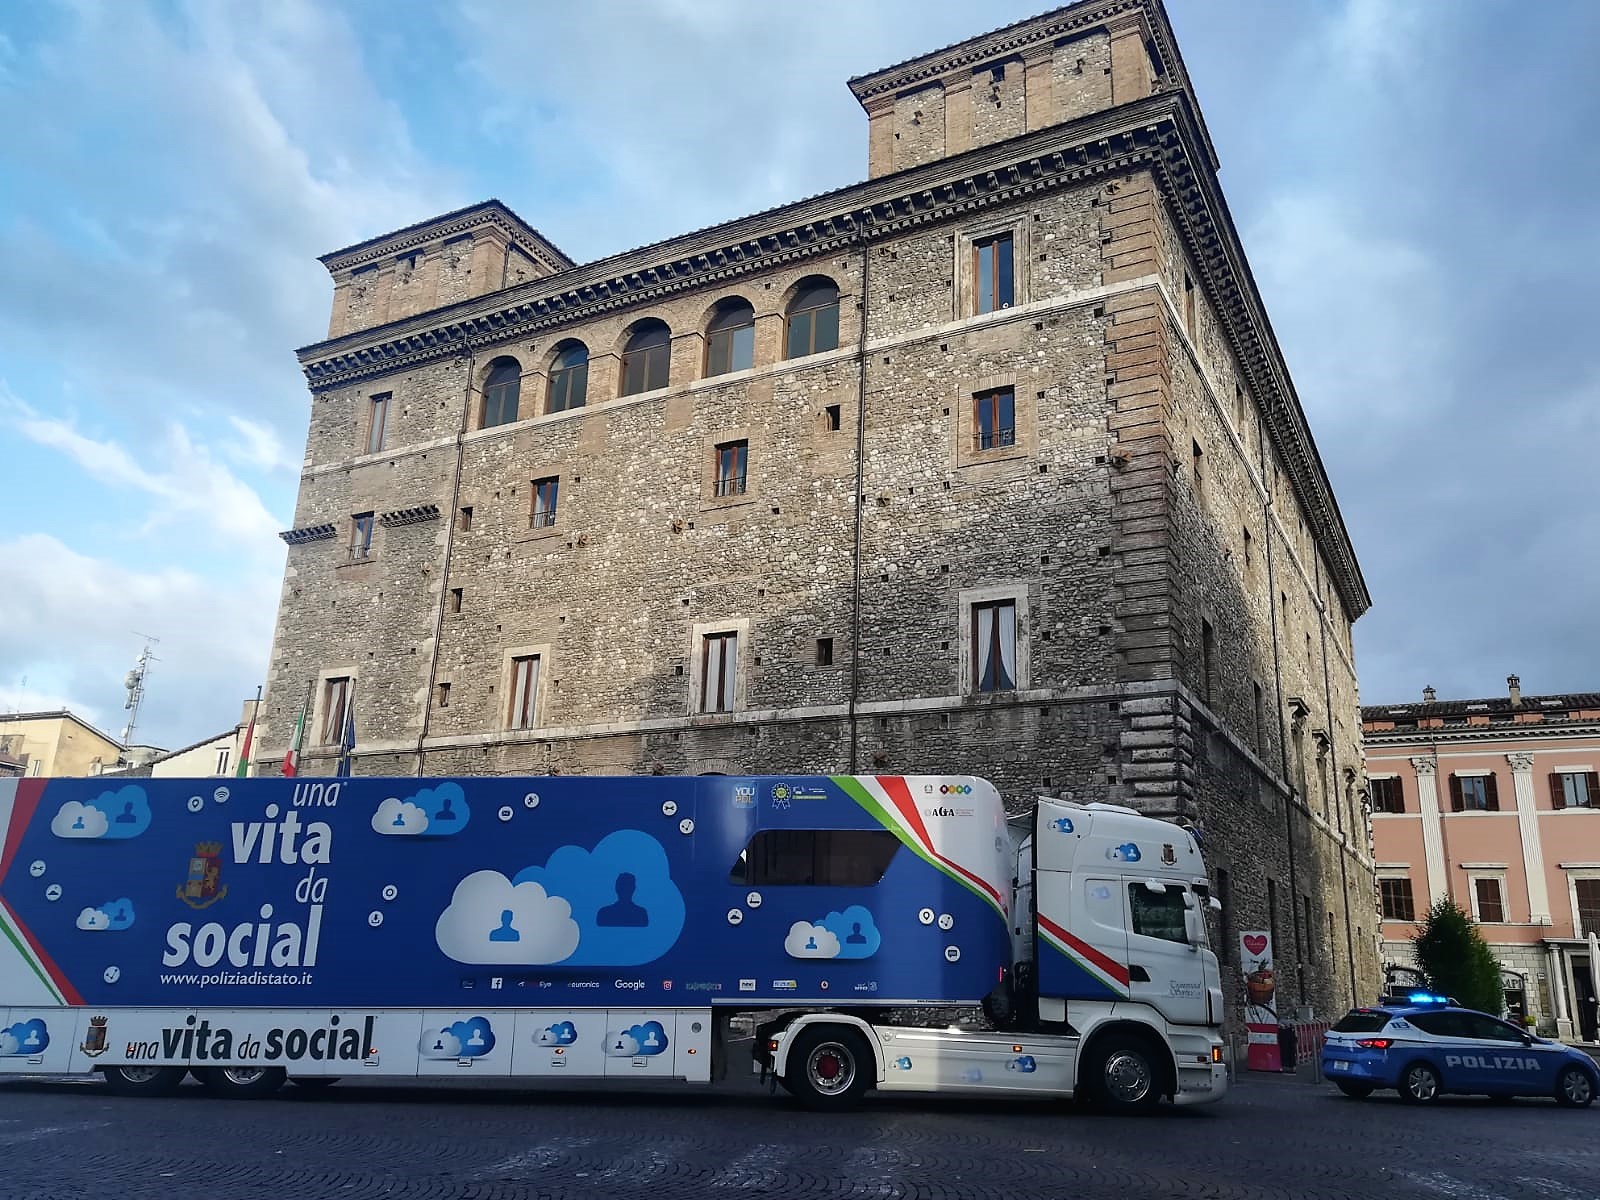 Il truck a Terni nel 2019